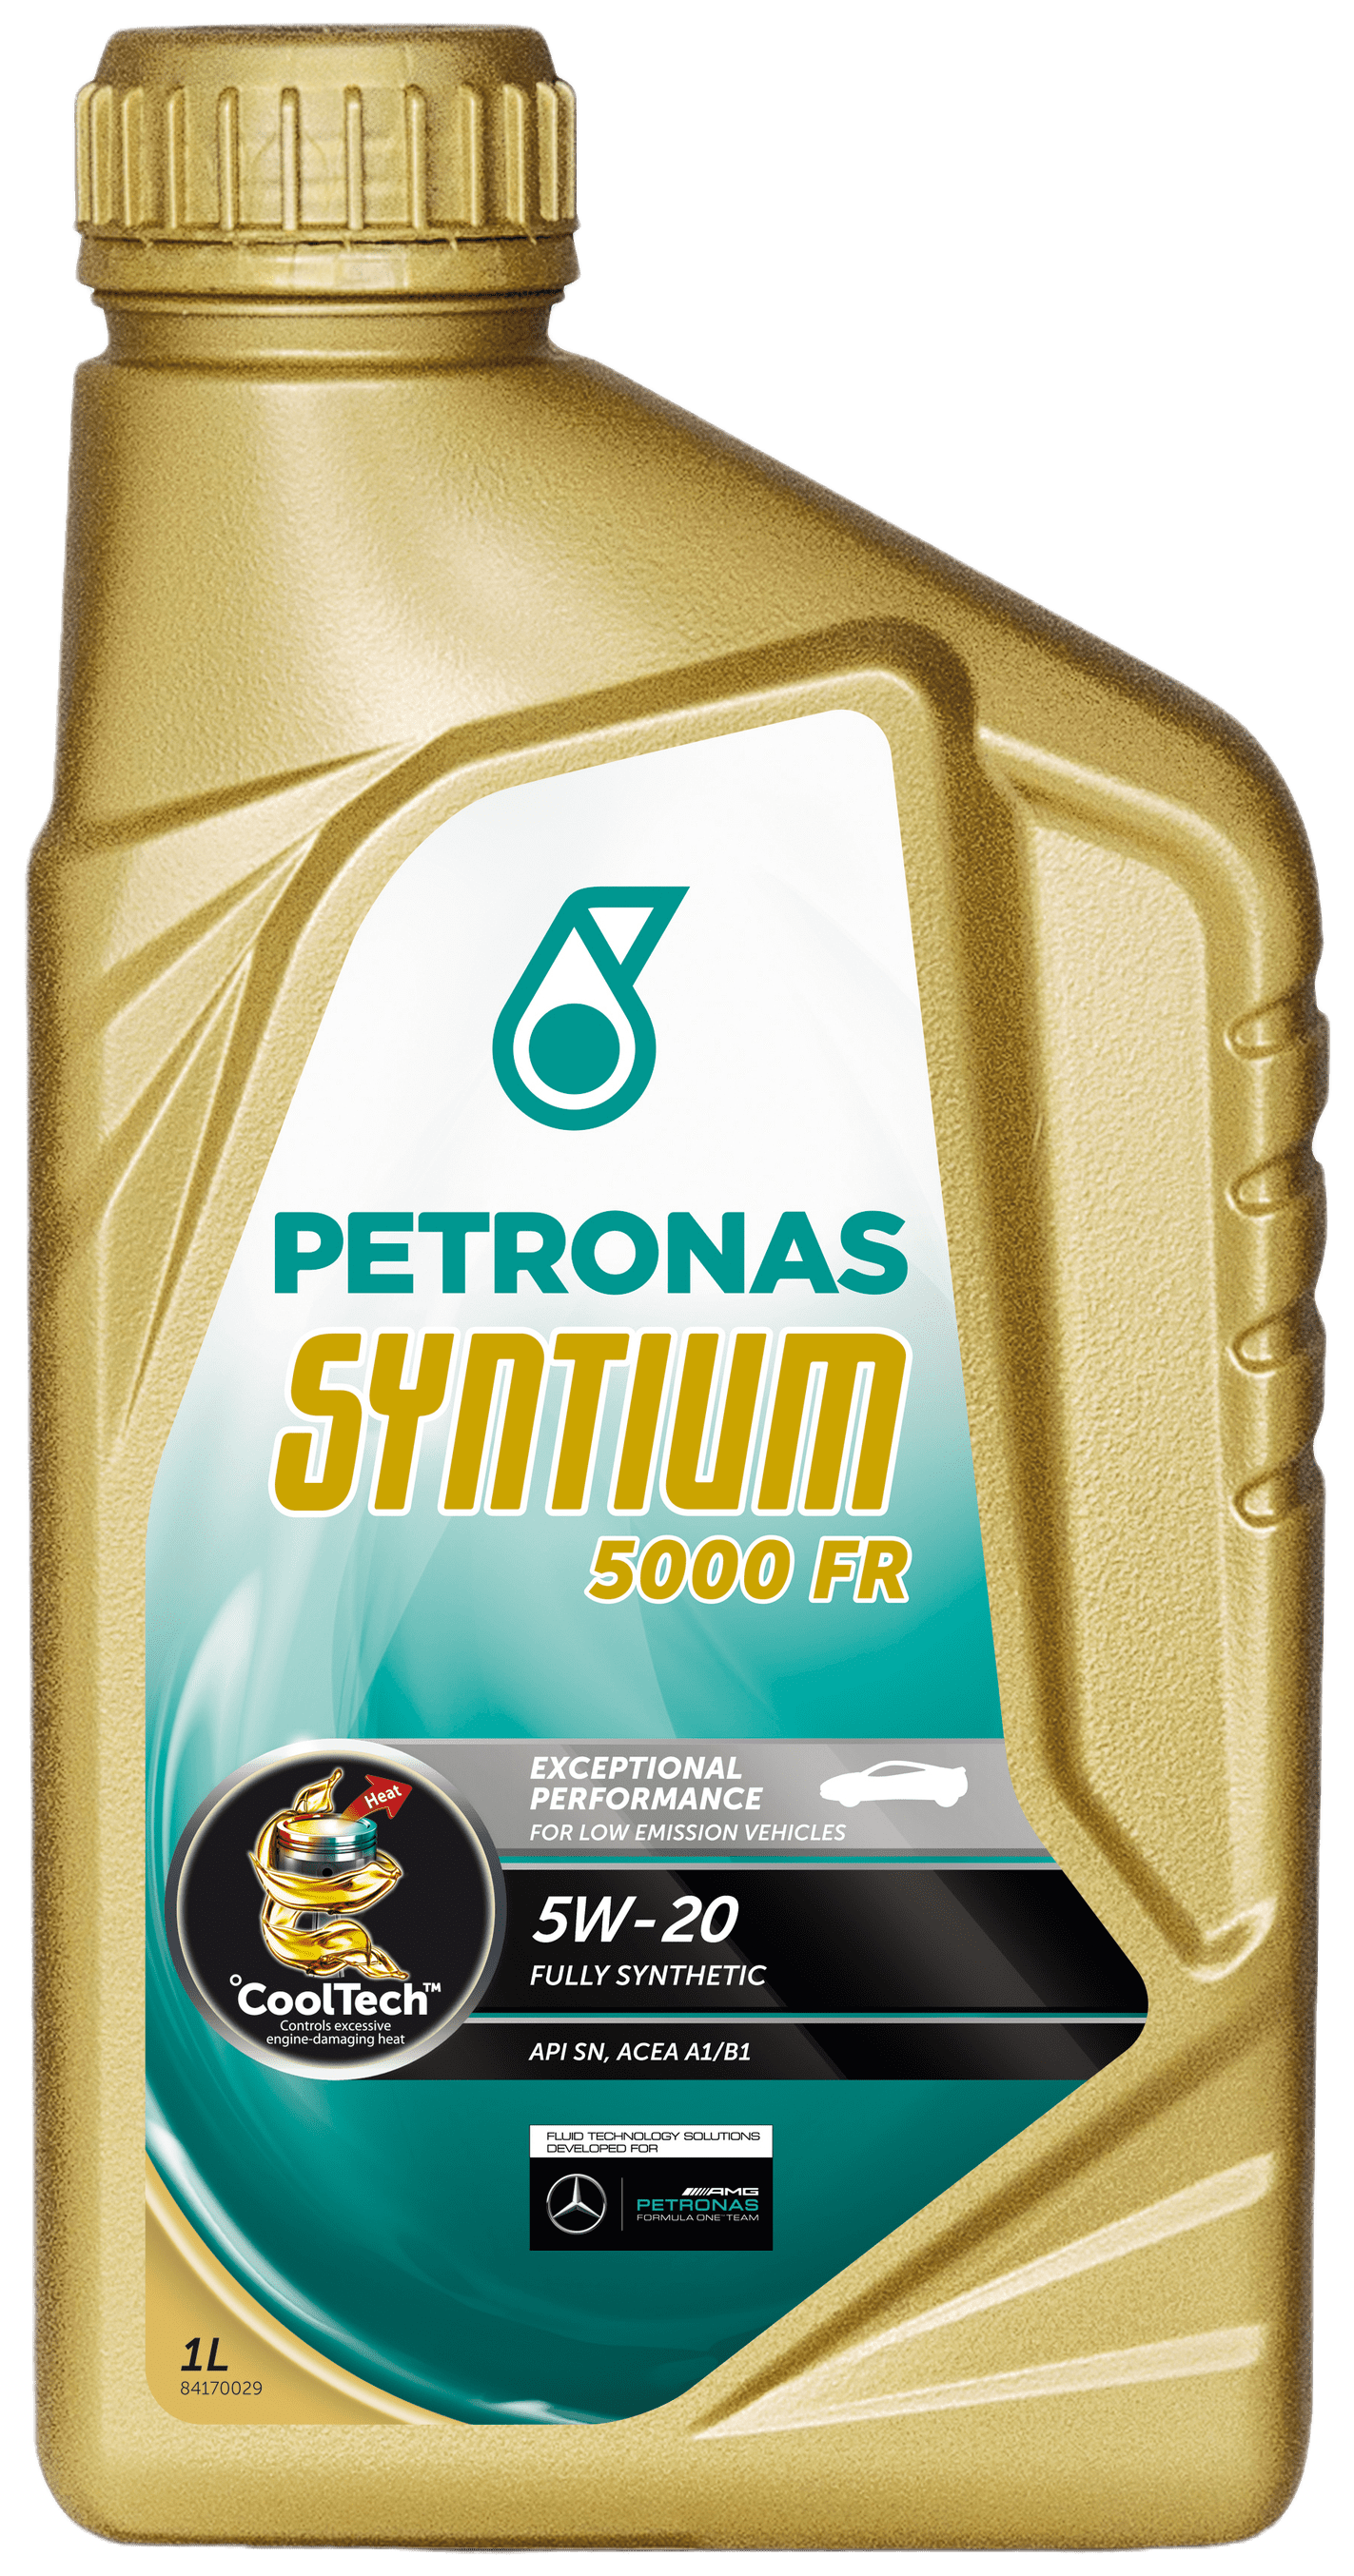 Petronas Syntium 5000 FR 5W-20, 1 lt